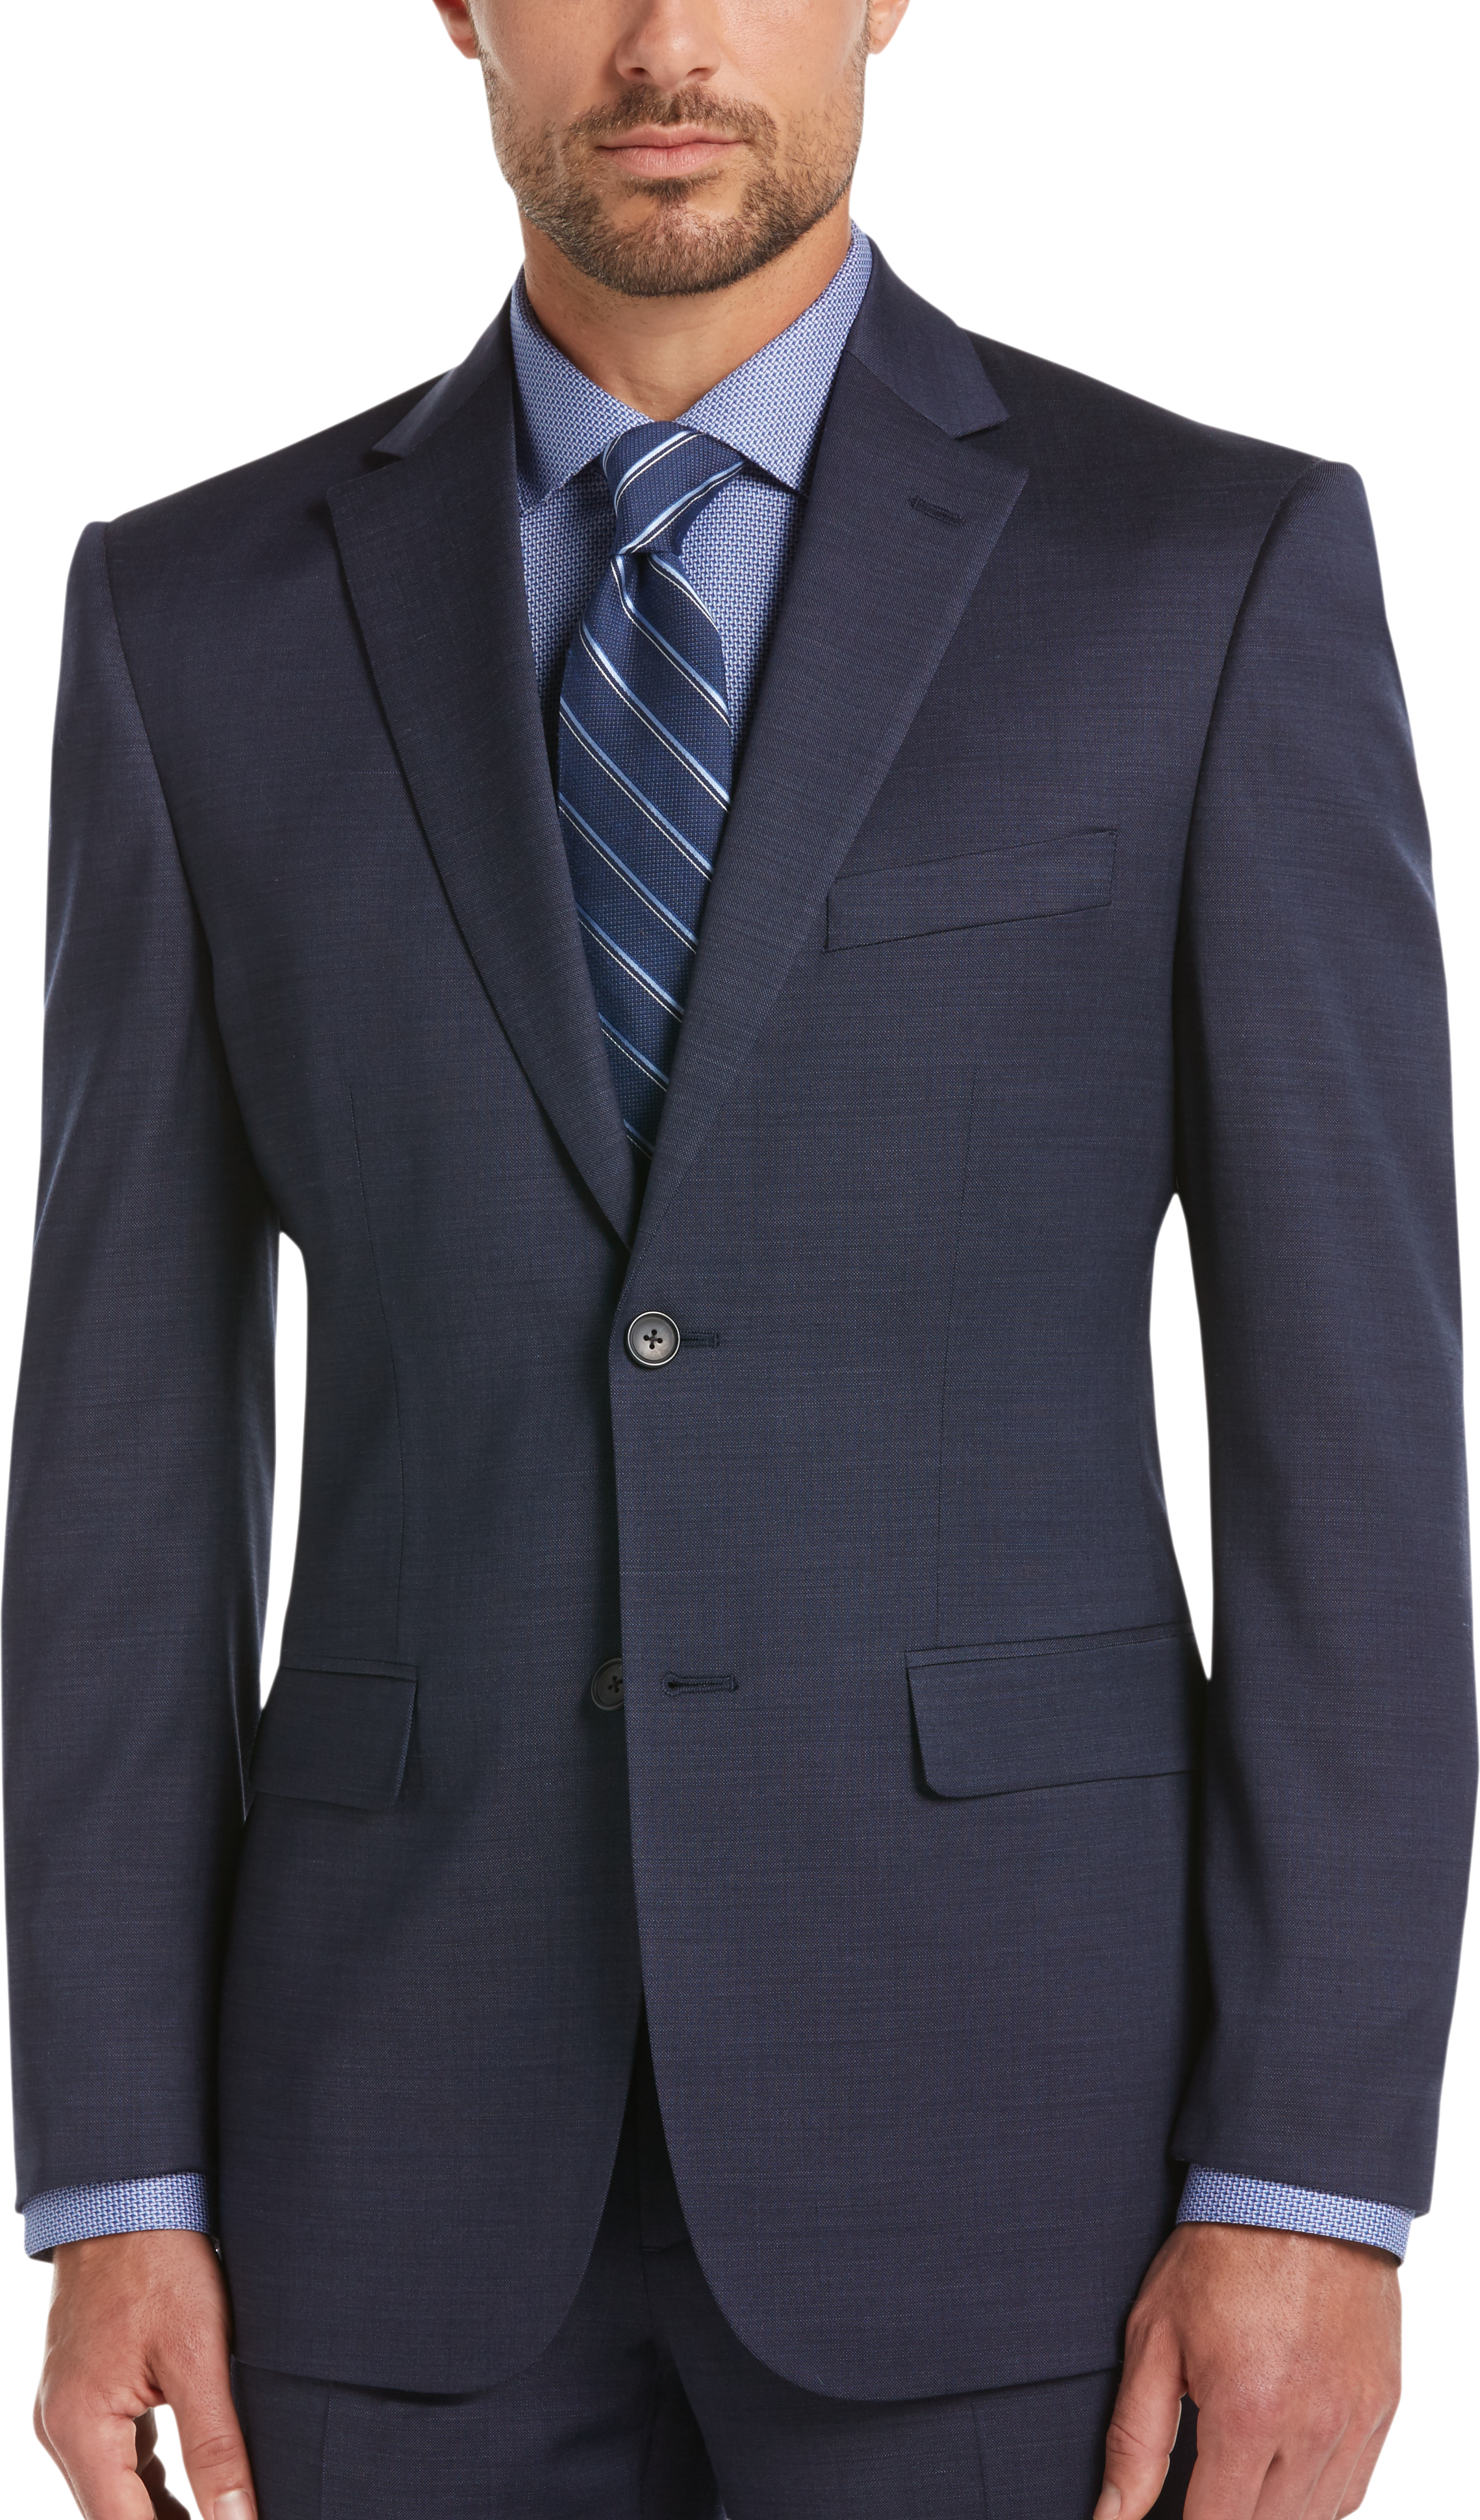 Awearness Kenneth Cole Blue Slim Fit Suit Separates Coat - Men's Suit ...